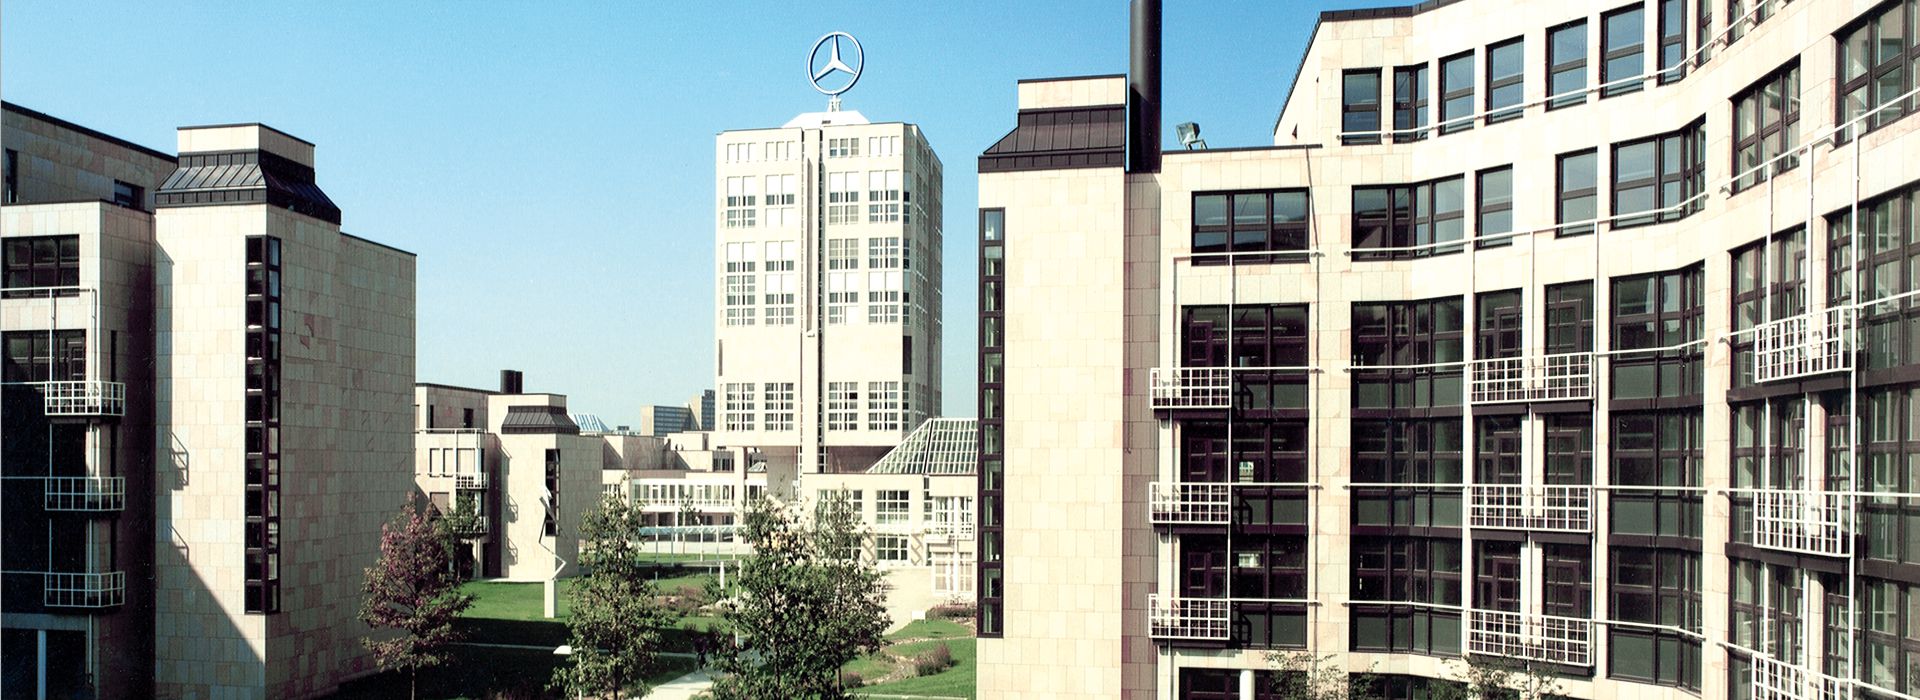 Daimler Headquarters, Stuttgart / Germany